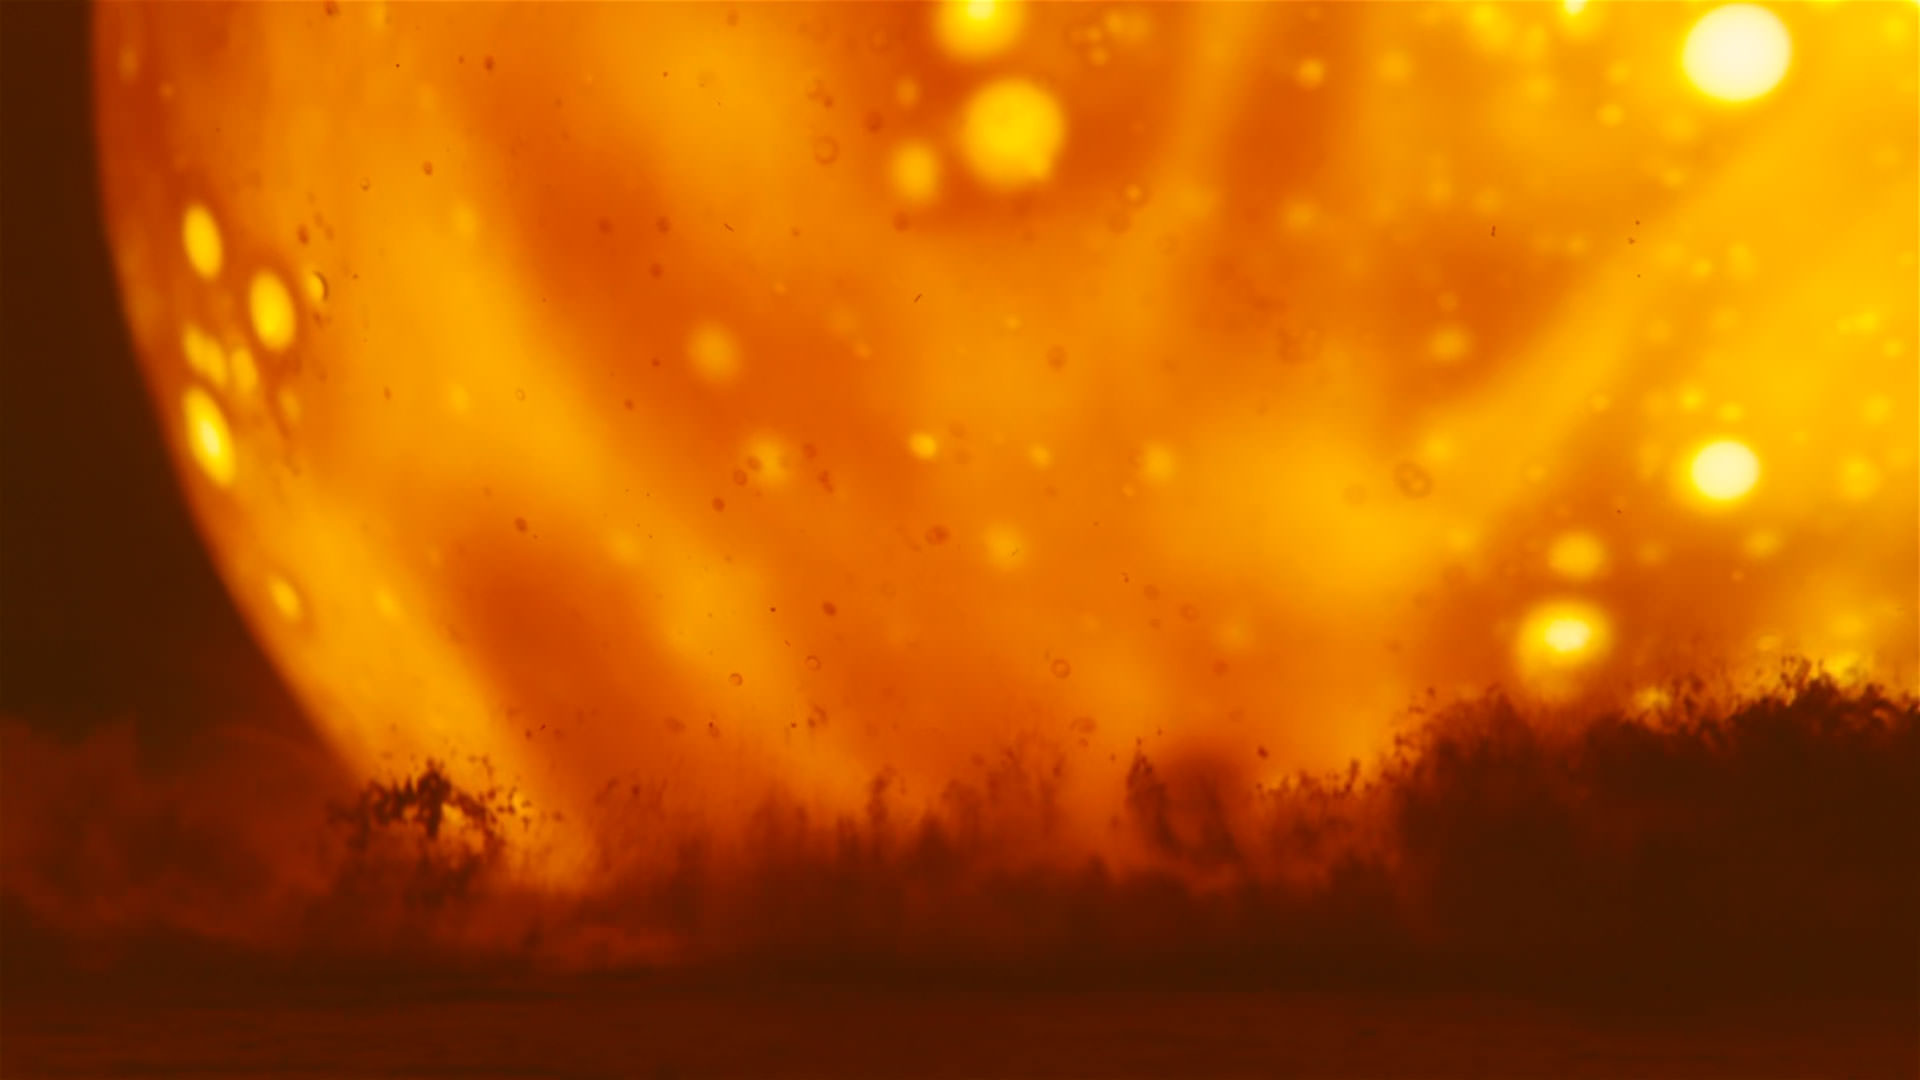 نمایی نزدیک از خورشید در فیلم اوپنهایمر کریستوفر نولان